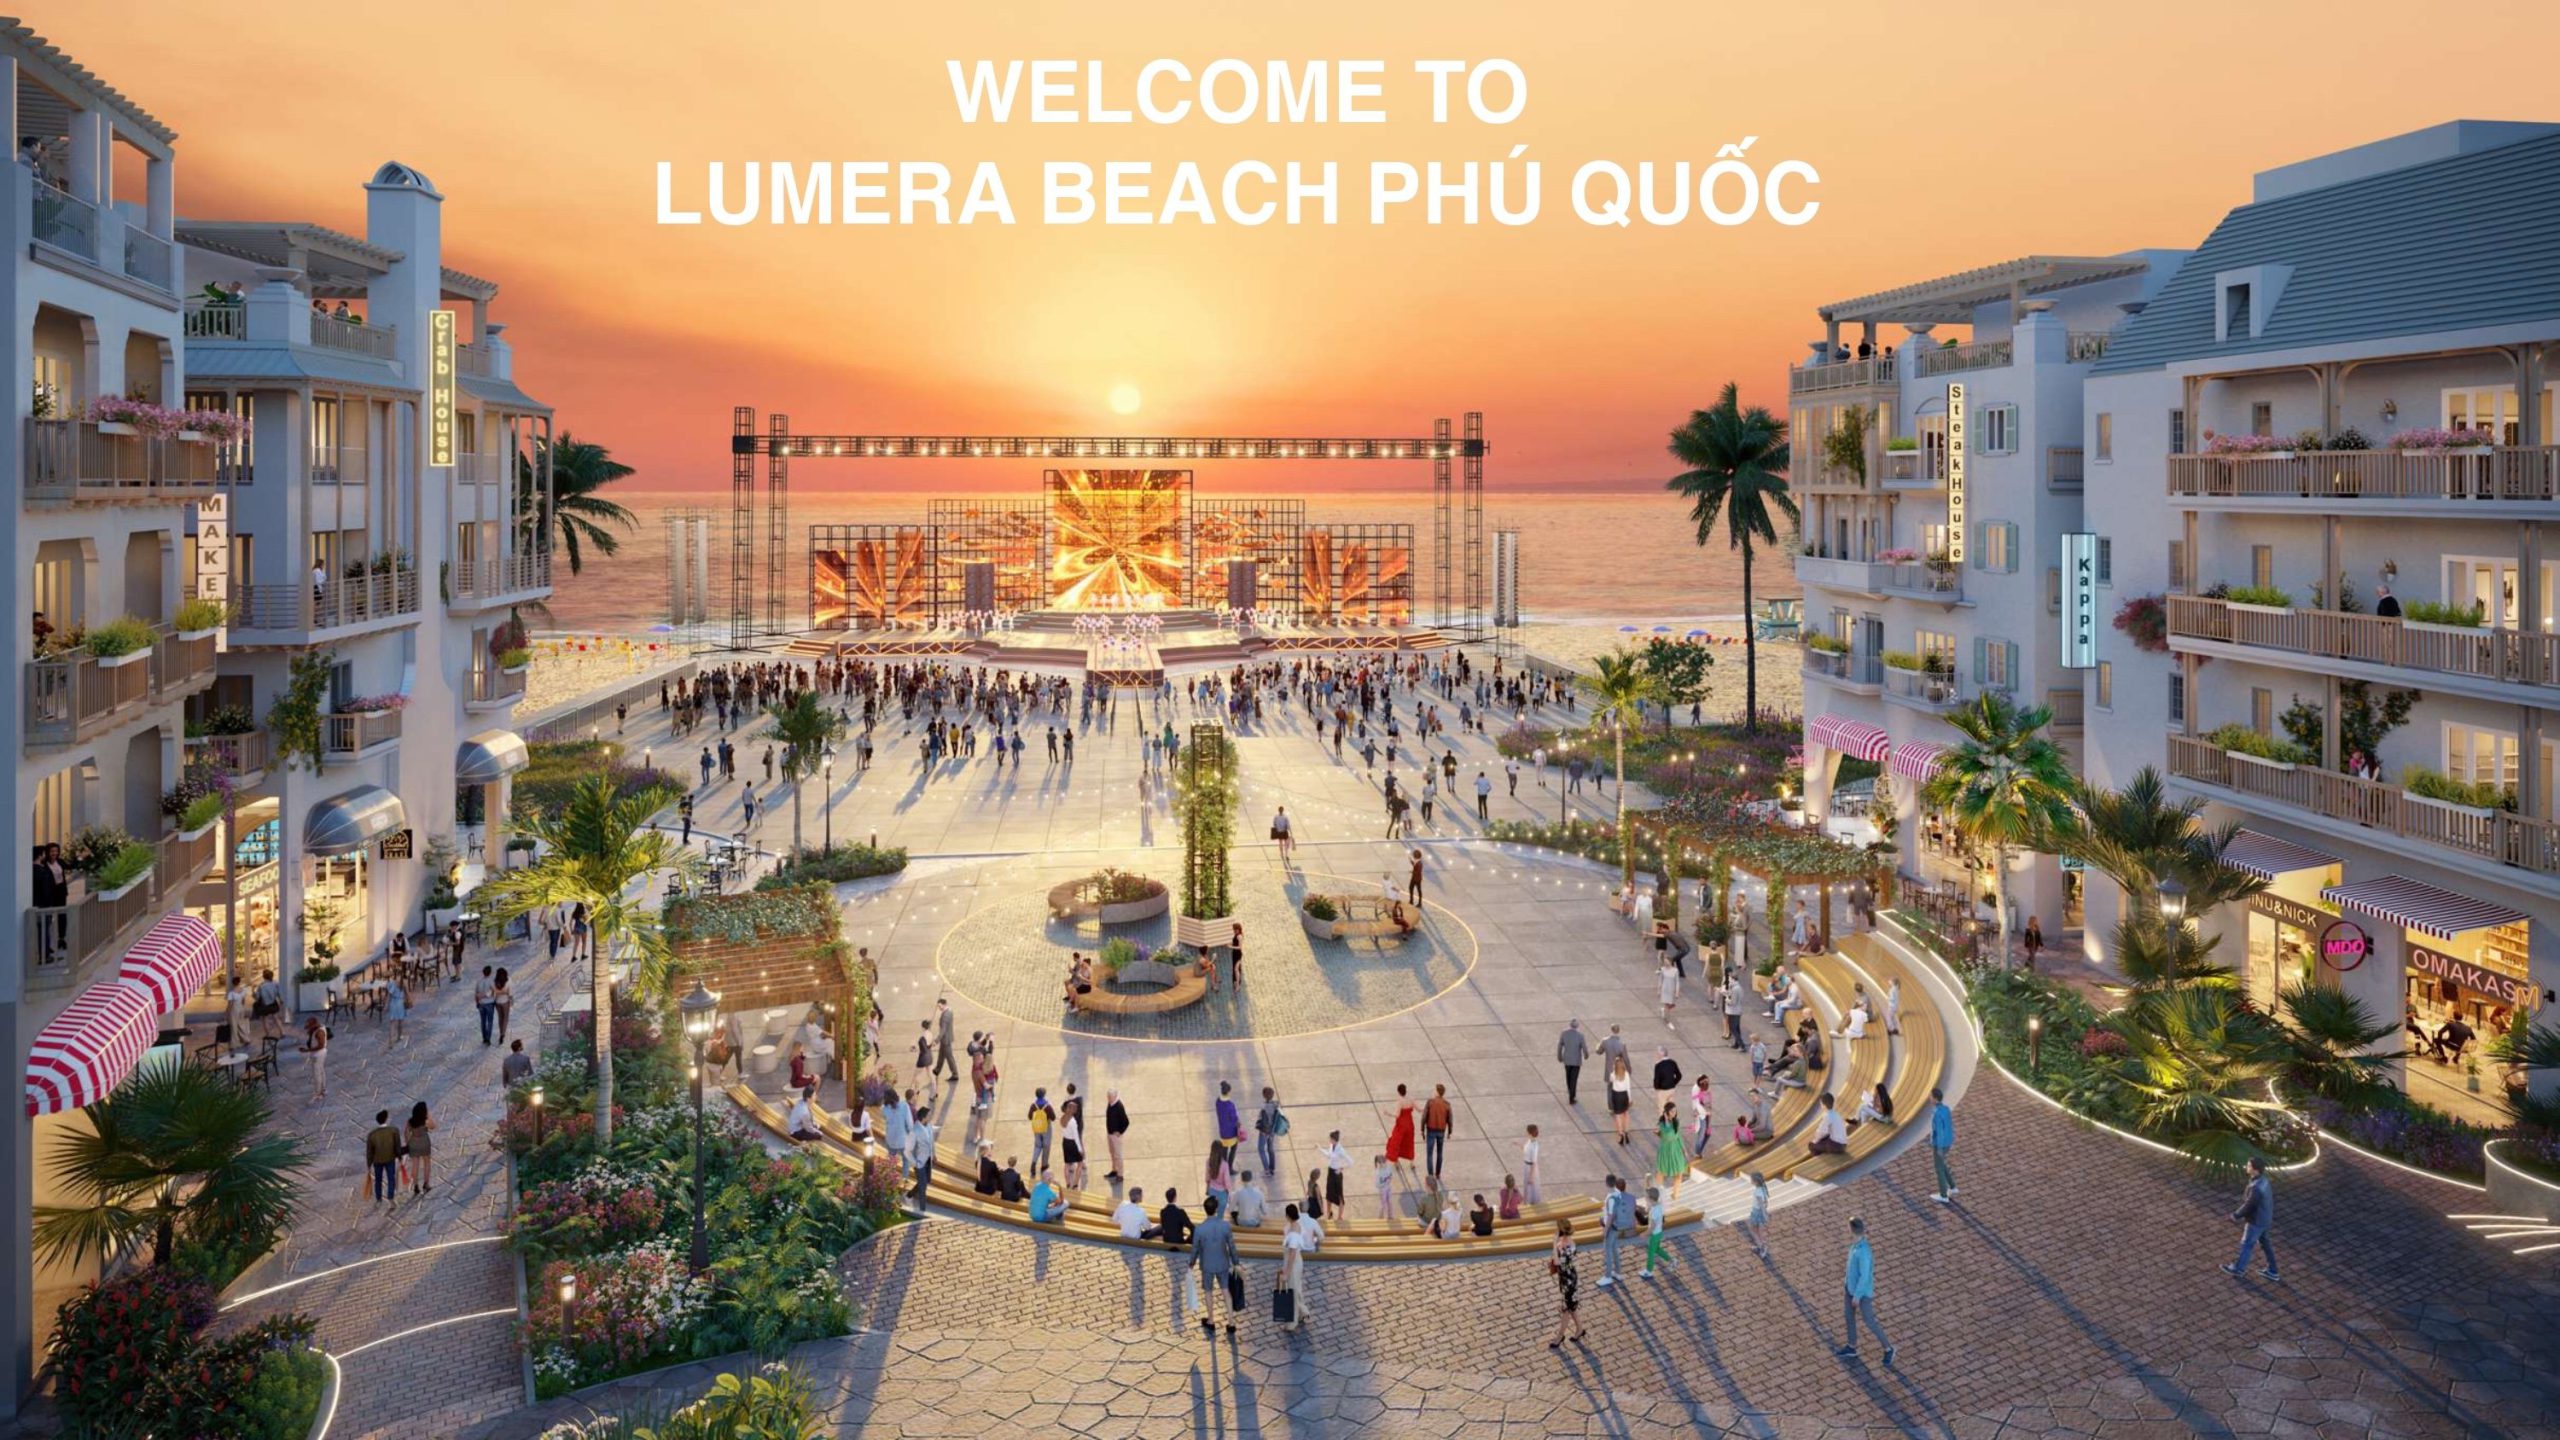 Là một trong những dự án đình đám của tập đoàn Vinh Phát với vị trí tọa lạc tại trục đường Trần Hưng Đạo, xã Dương Tơ, thành phố Phú Quốc, Lumera Beach sở hữu vị trí đắc địa